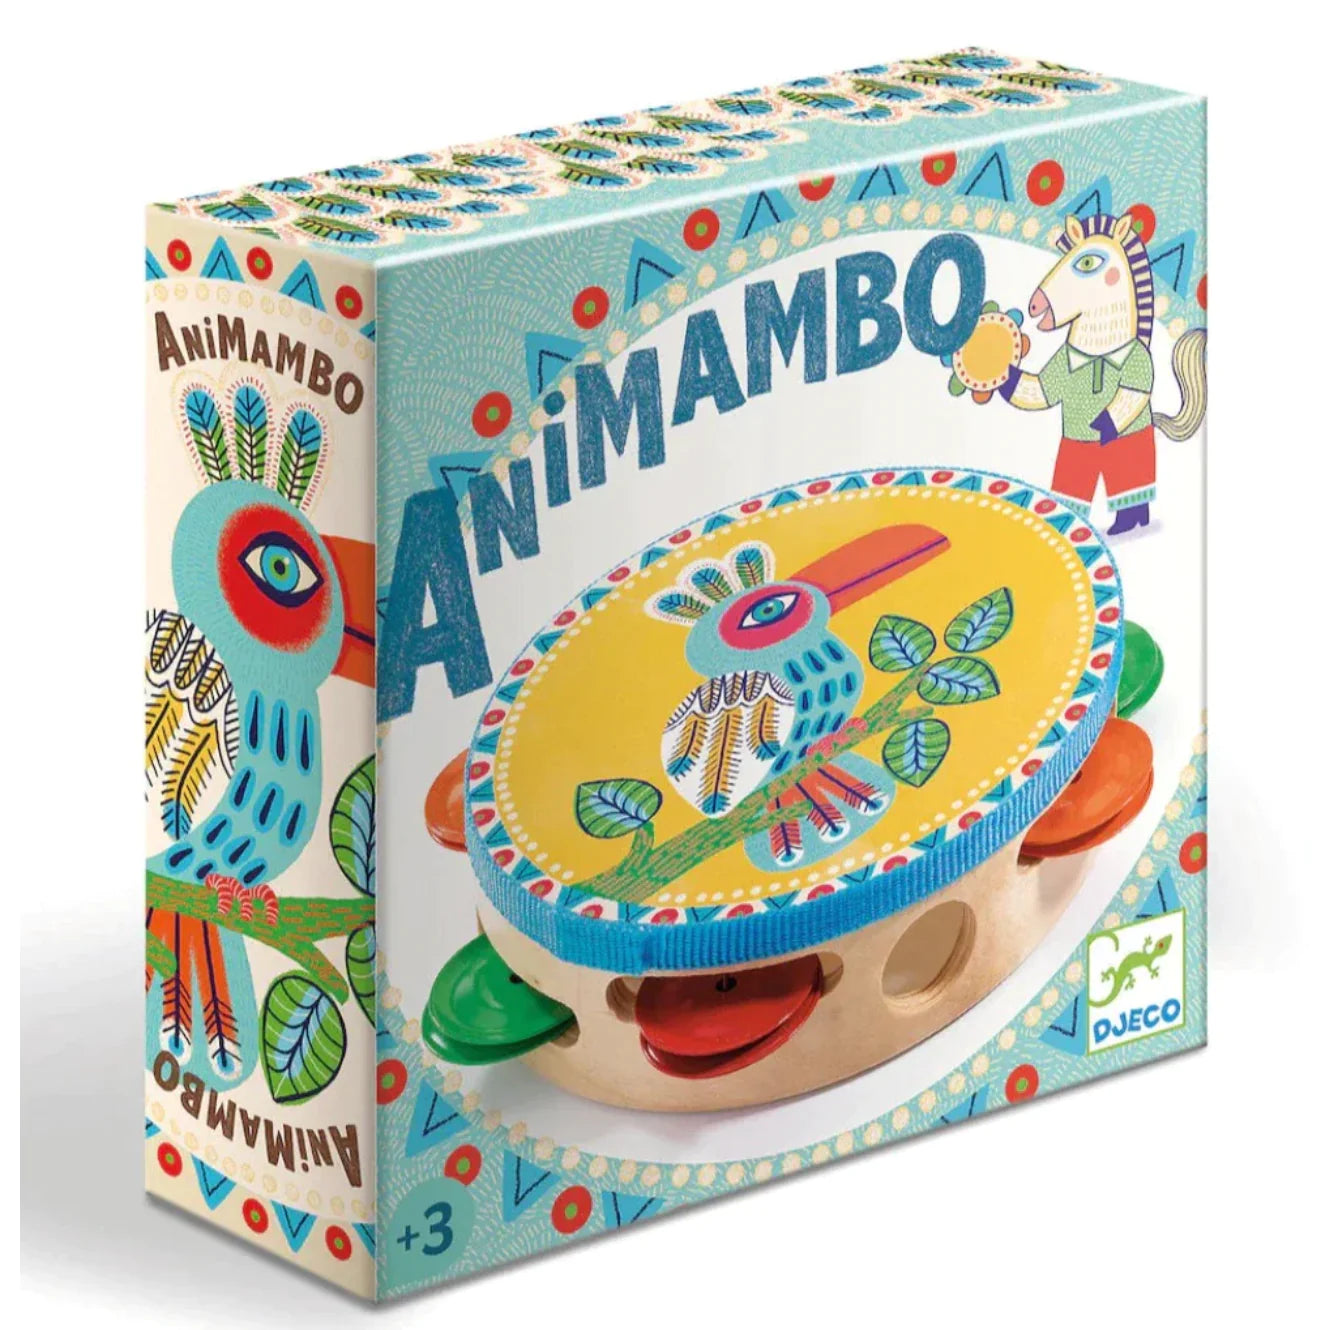 Animambo Tambourine